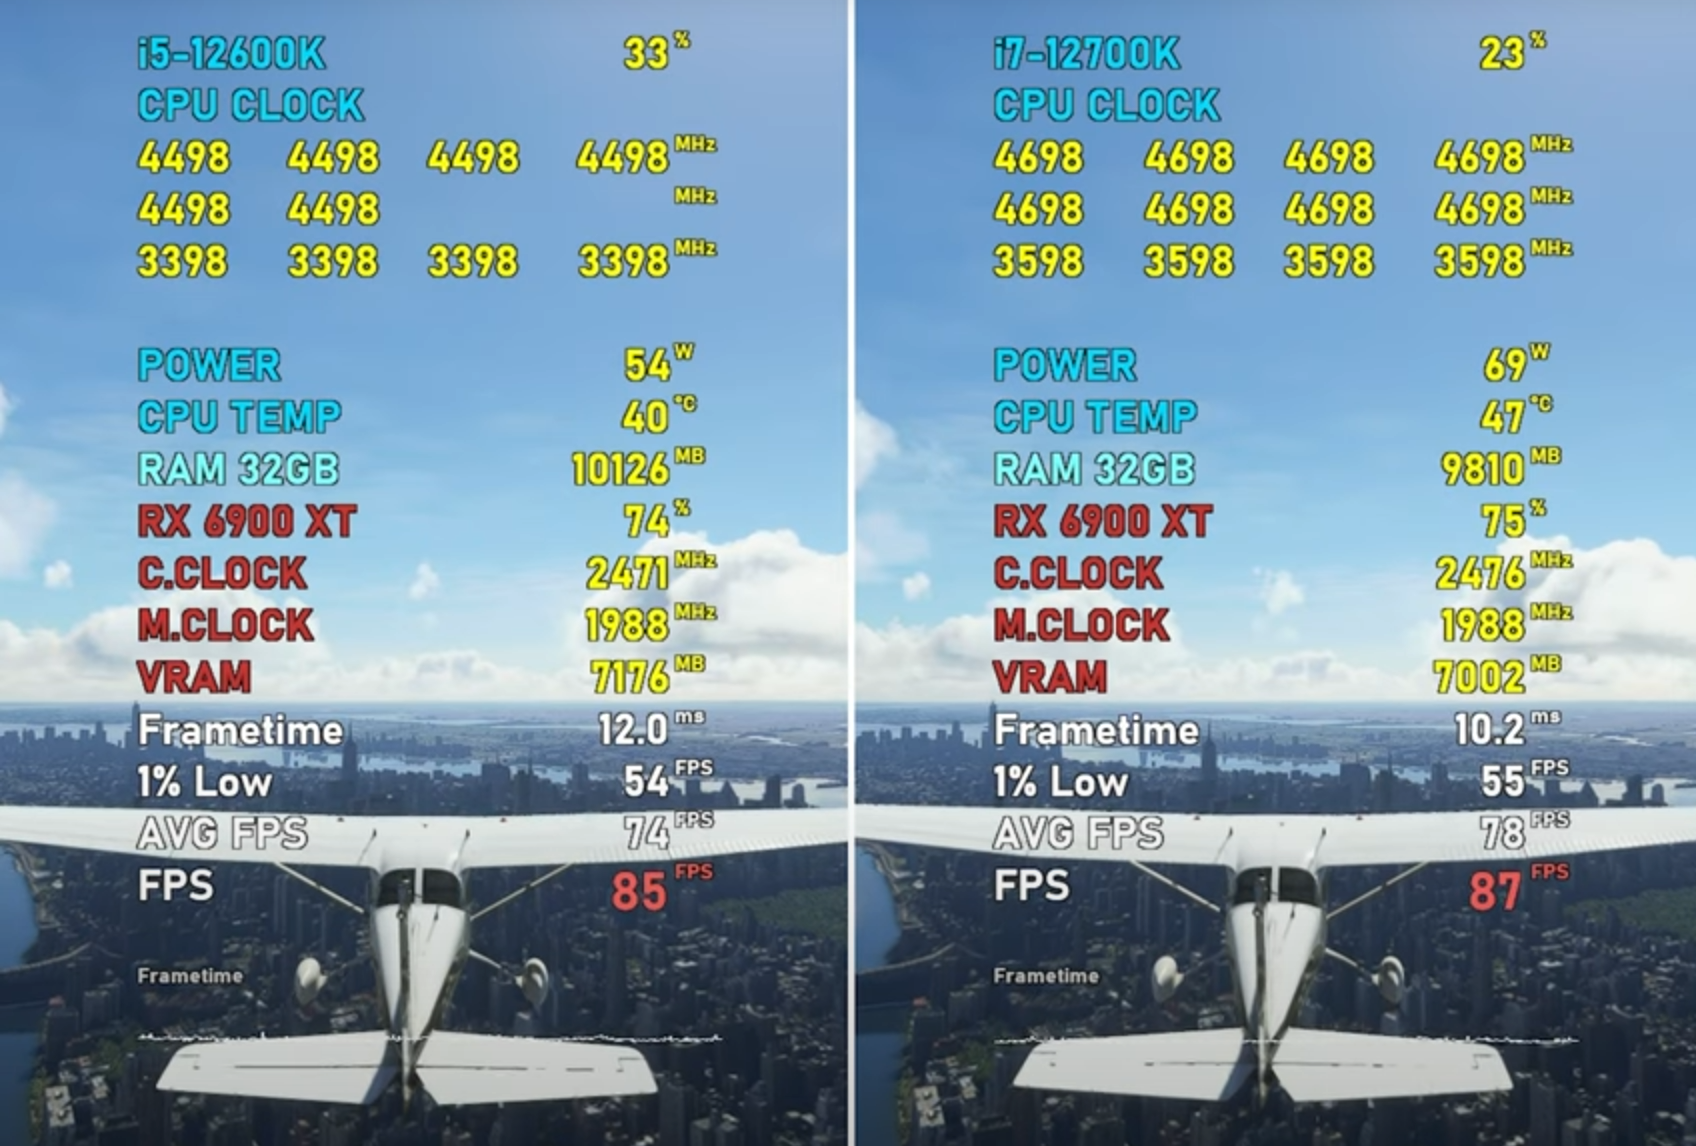 Core i7-12700K vs. Core i5-12600K MS Flight Simulator